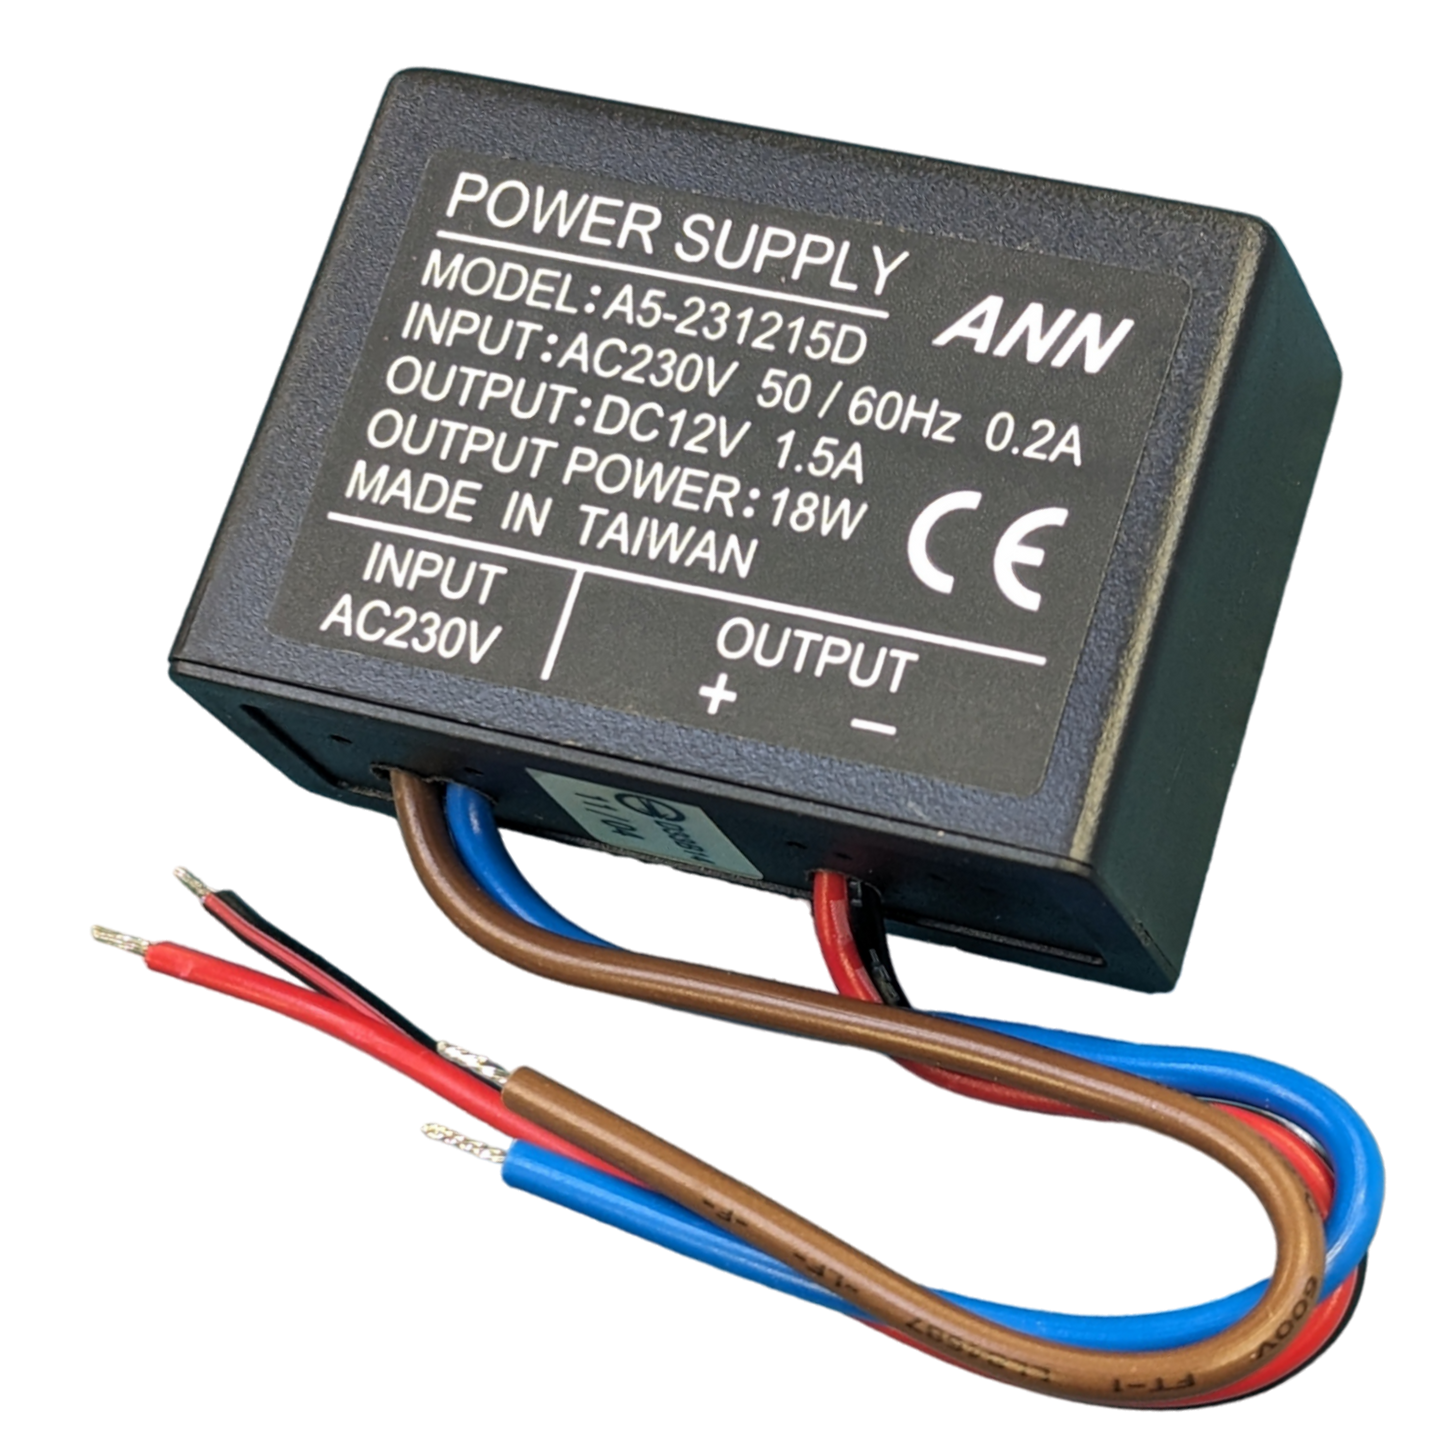 A5-231215D 12V Power Supply